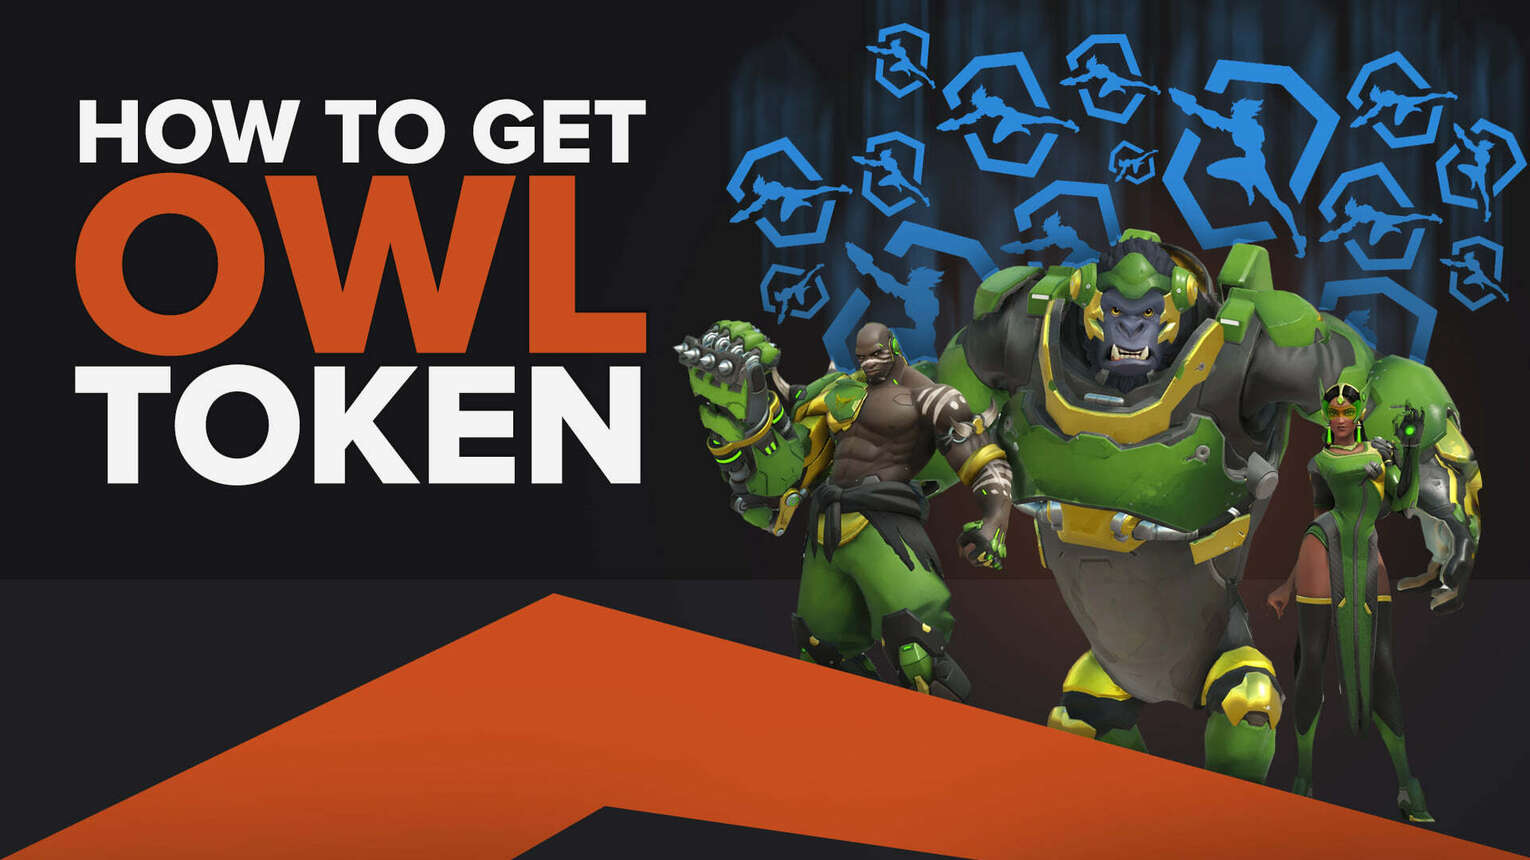 How To Get & Redeem OWL Tokens in Overwatch